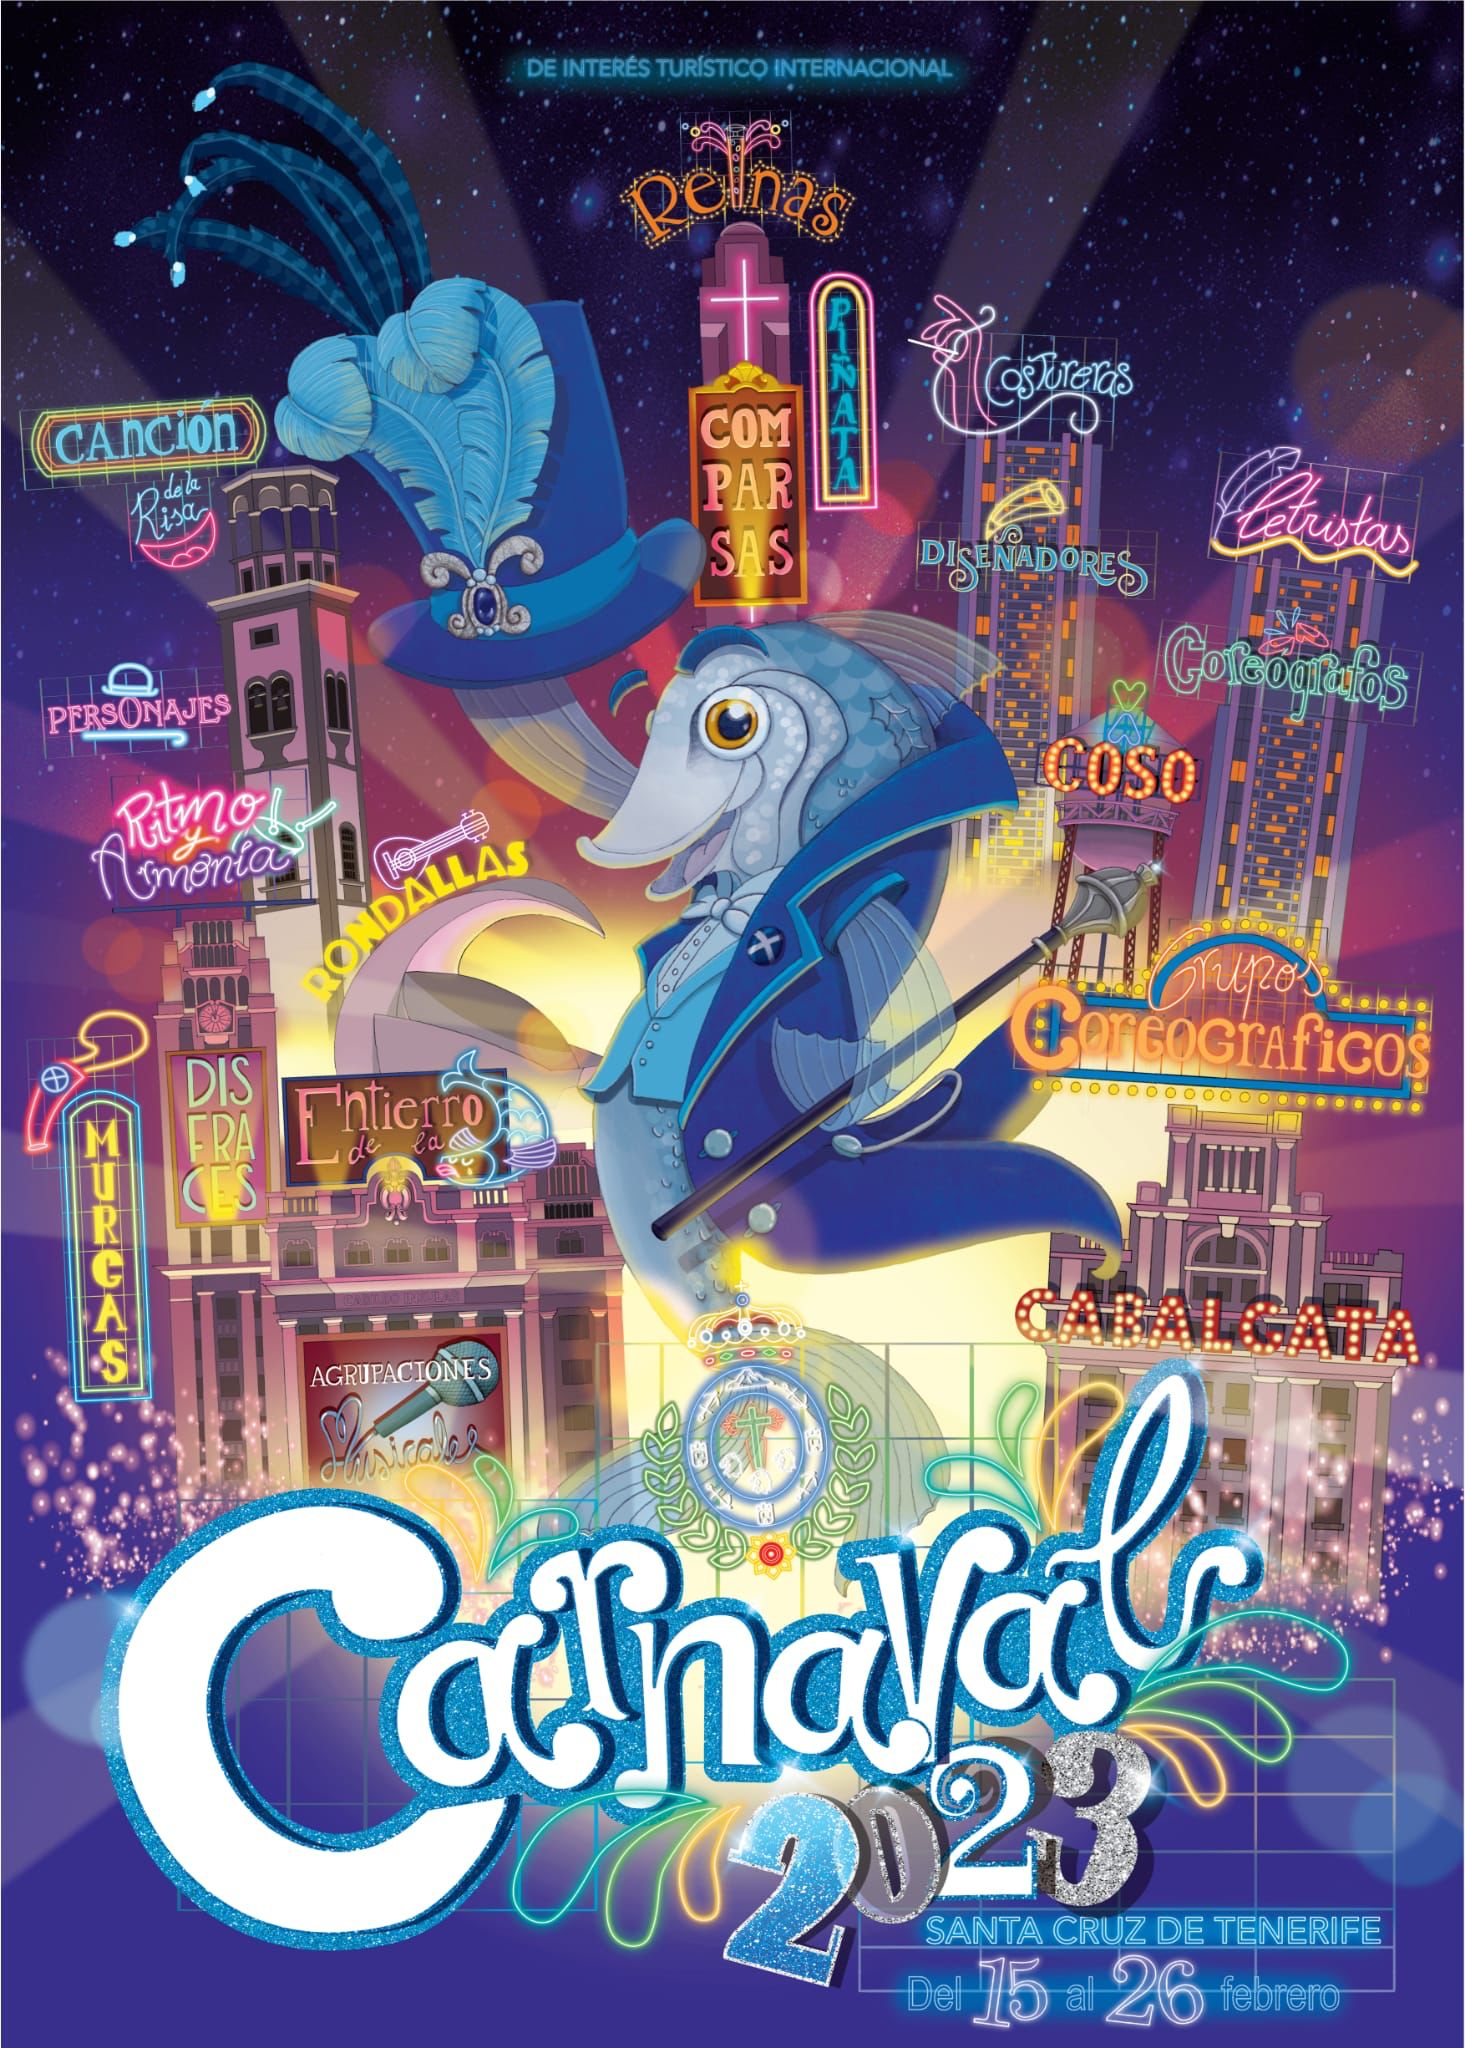 Carnaval de Tenerife 2023 - Programa - Carnaval de Tenerife se retrasa a Junio 2022 ✈️ Foro Islas Canarias